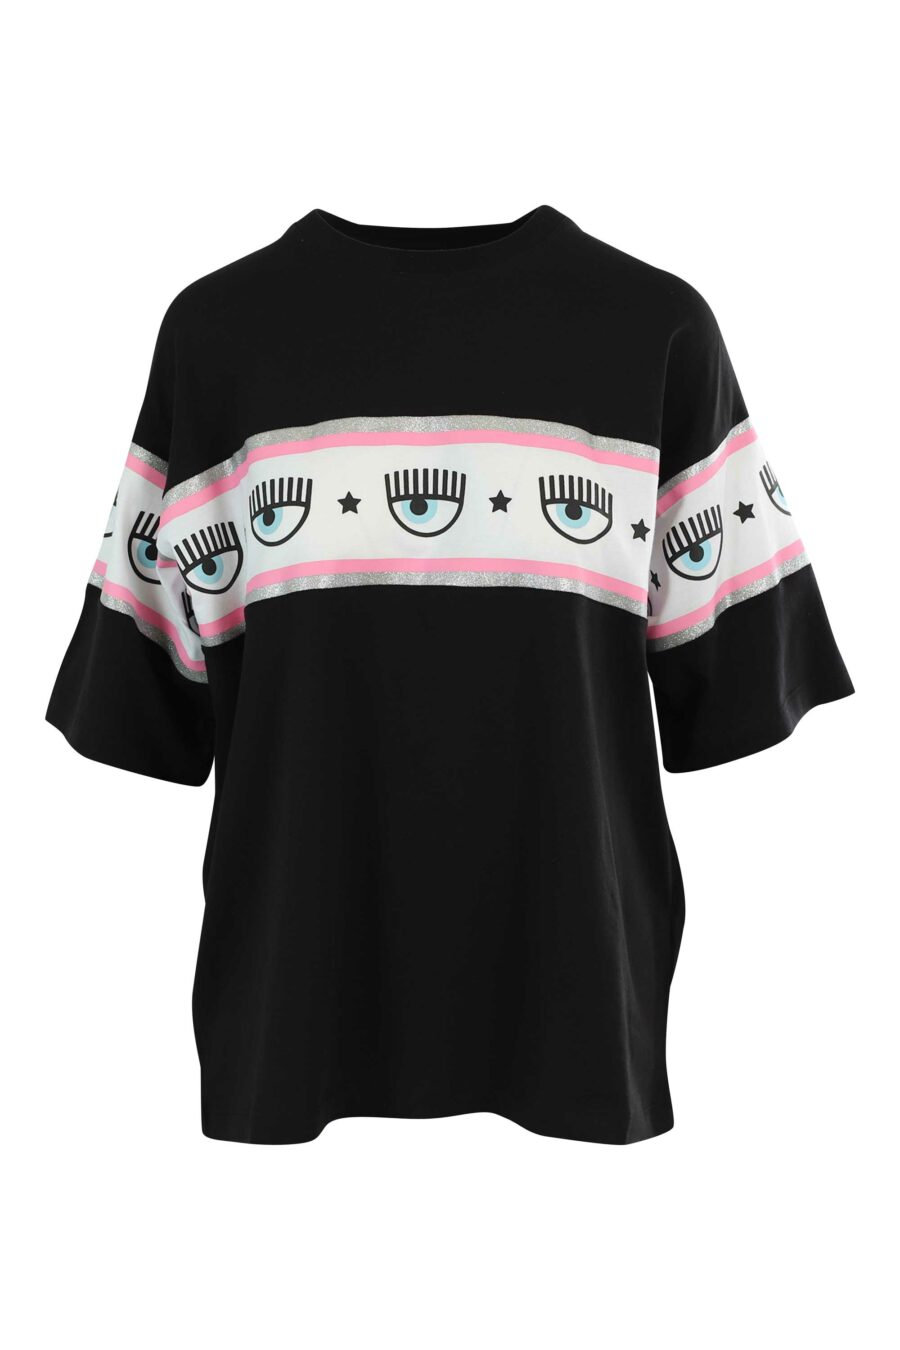 Camiseta negra manga ancha con logo ojo en cinta - 8052672419521